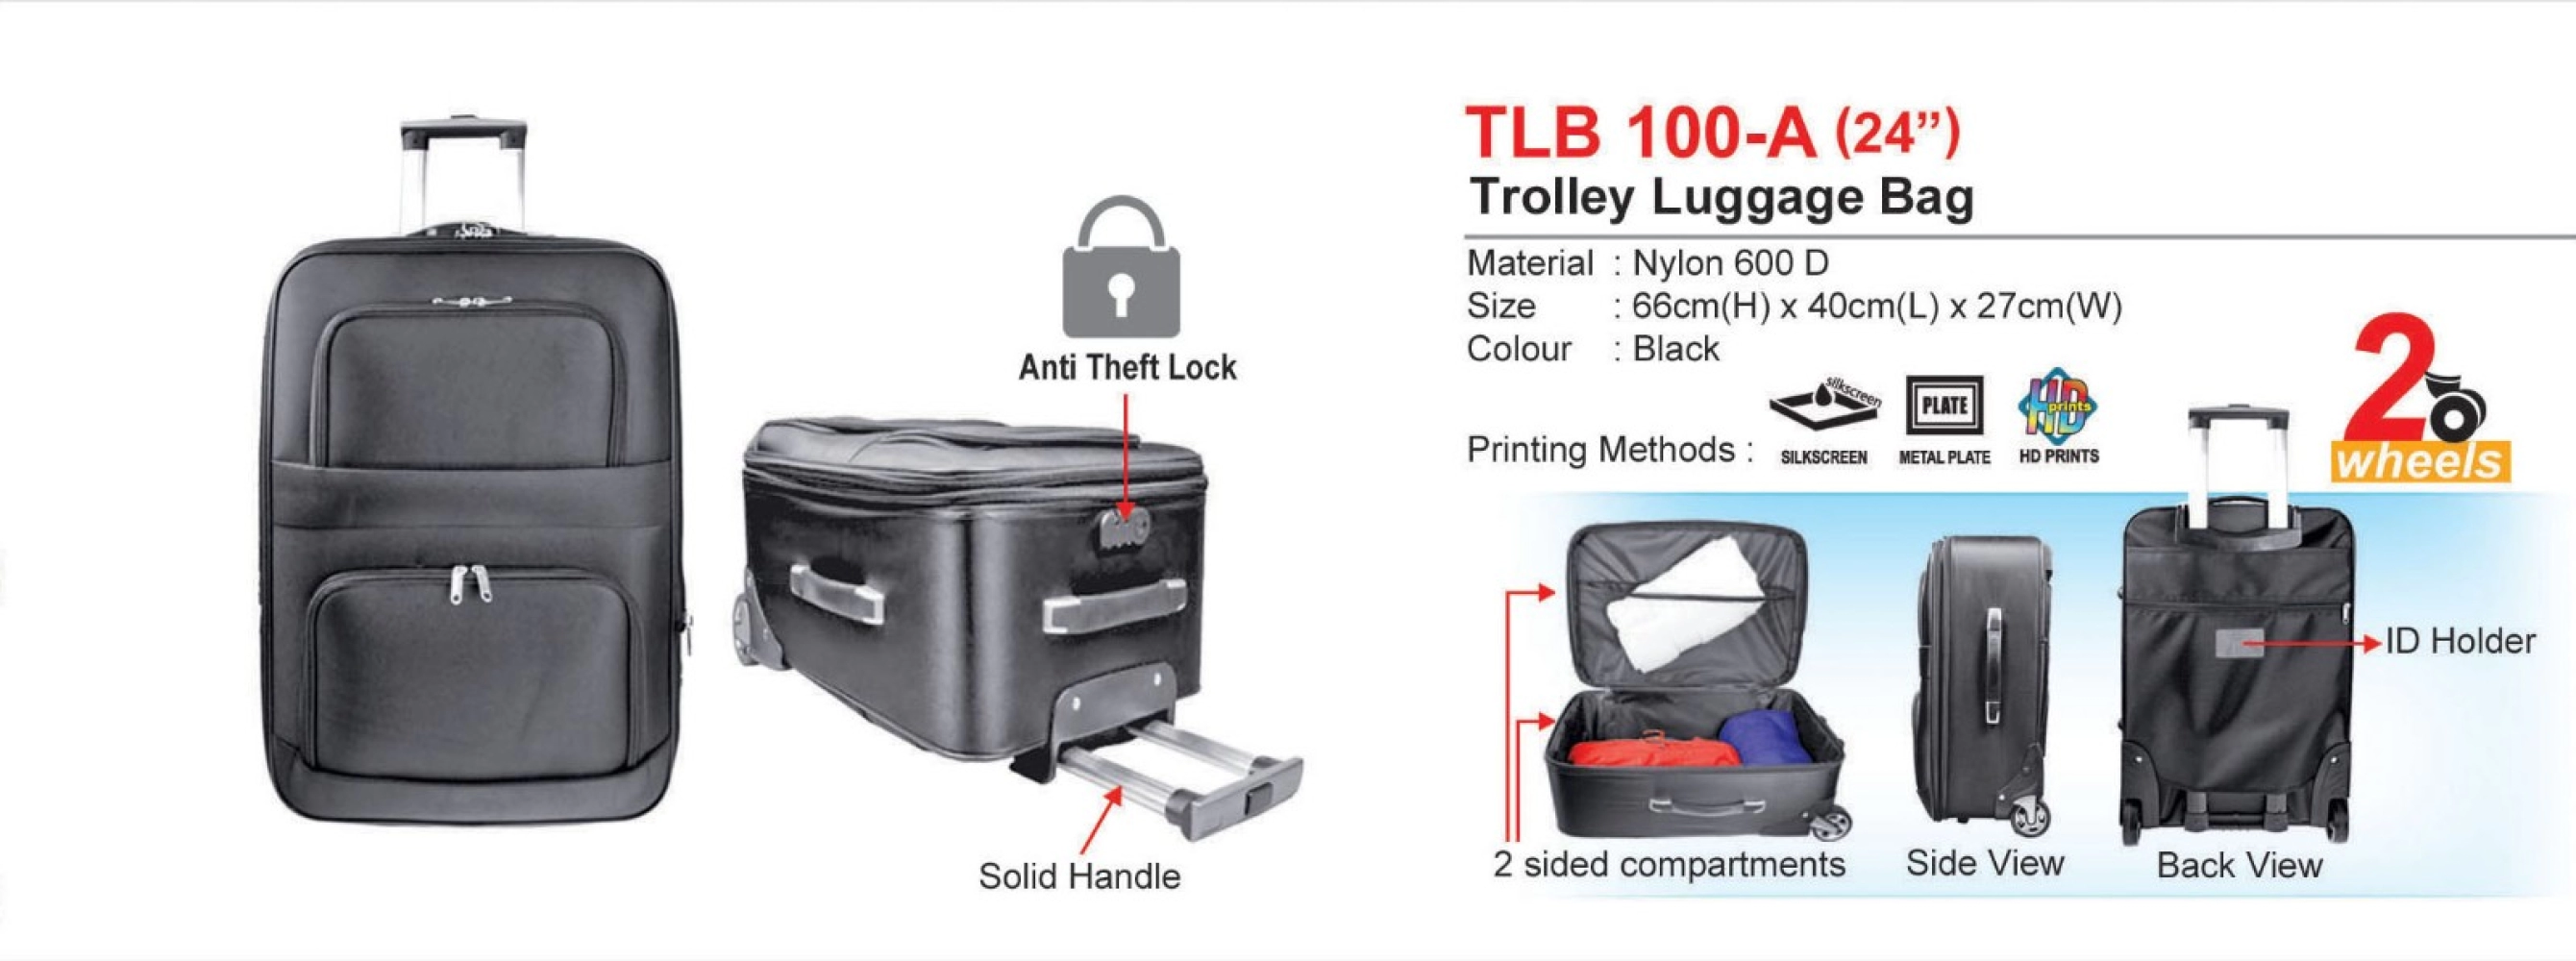 TLB100-A (24") Trolley Luggage Bag (I)